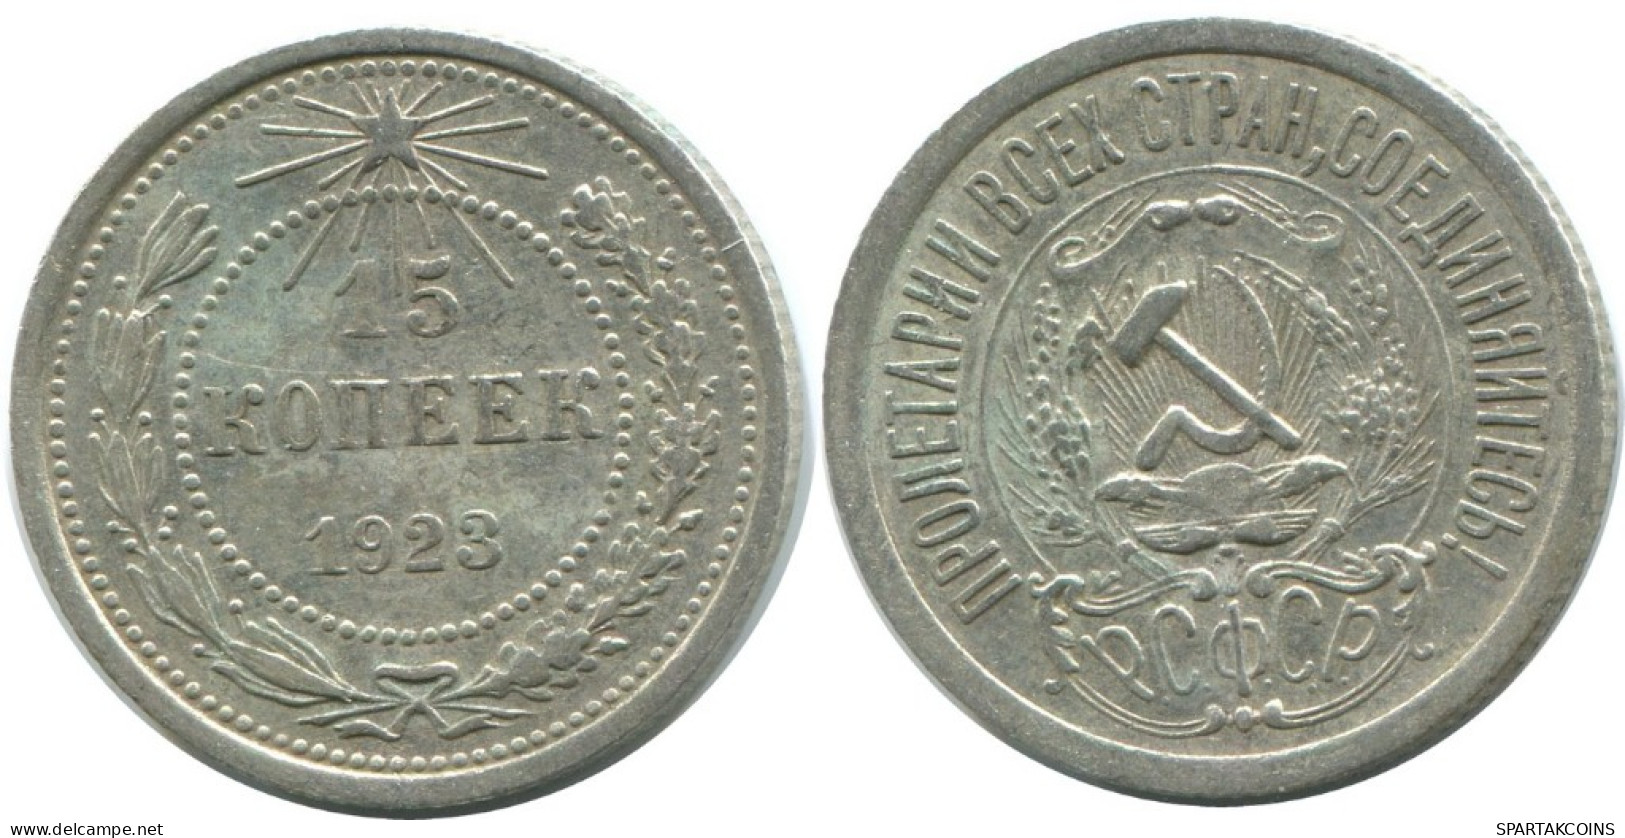 15 KOPEKS 1923 RUSSIA RSFSR SILVER Coin HIGH GRADE #AF103.4.U.A - Rusland